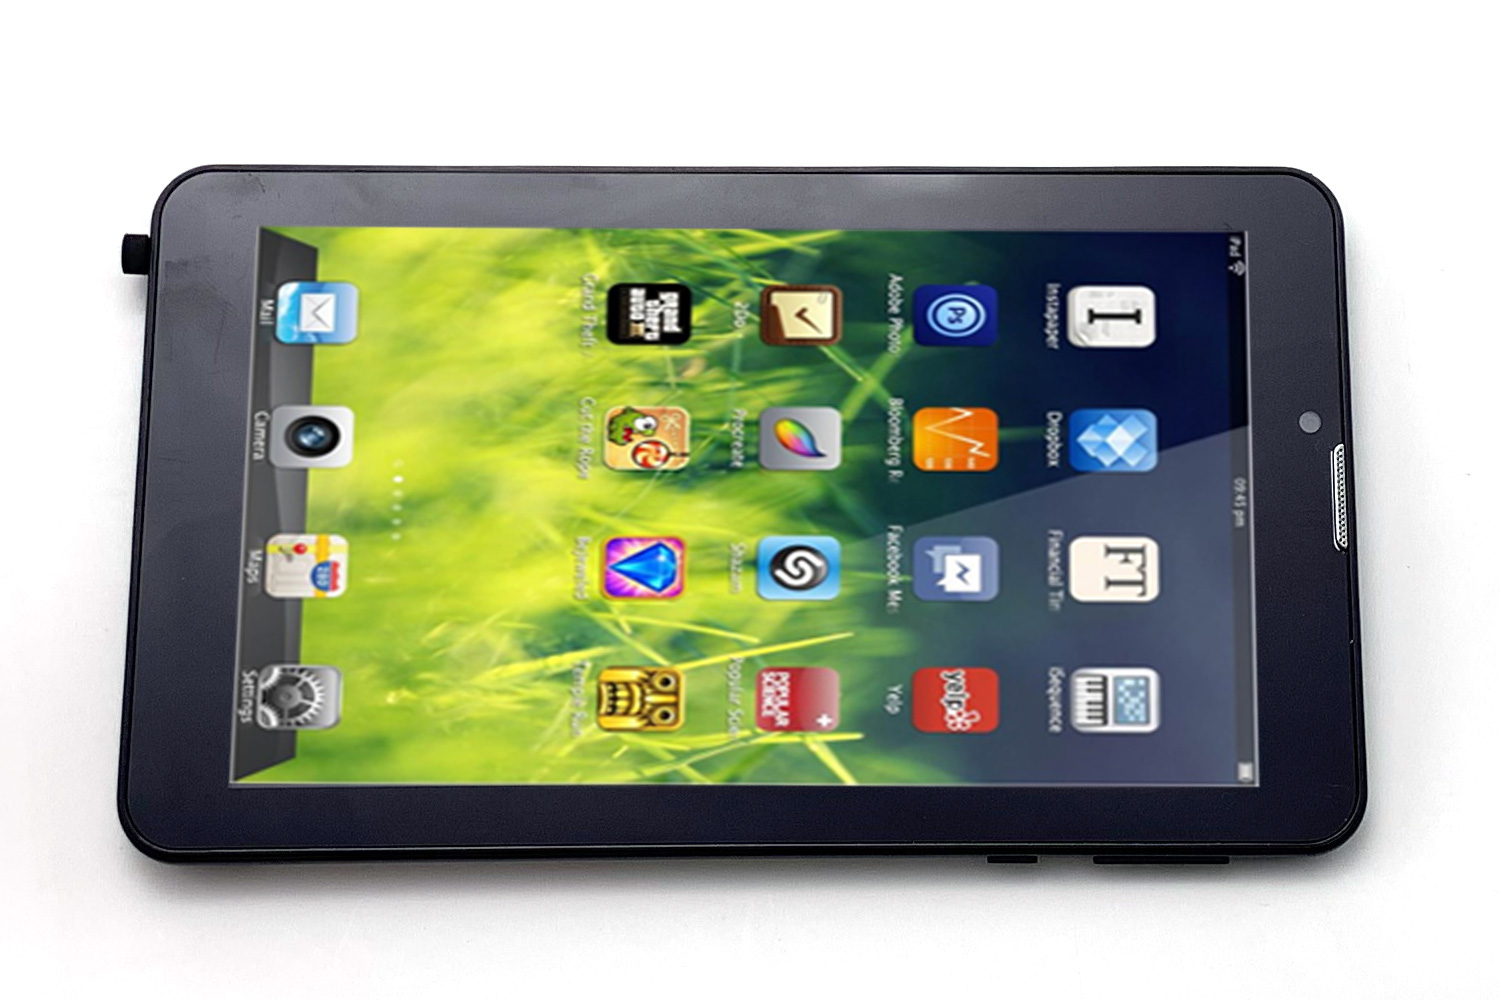 รูปภาพของ New แท็บเล็ต ระบบเเอนดรอยด์ [ Android ] ข้อเสนอที่ดีที่สุด แท็บเล็ต 7นิ้ว Android 4.4.2 Dual-core 7 lnch Tablet PC 2GB RAM 16 GB ROM